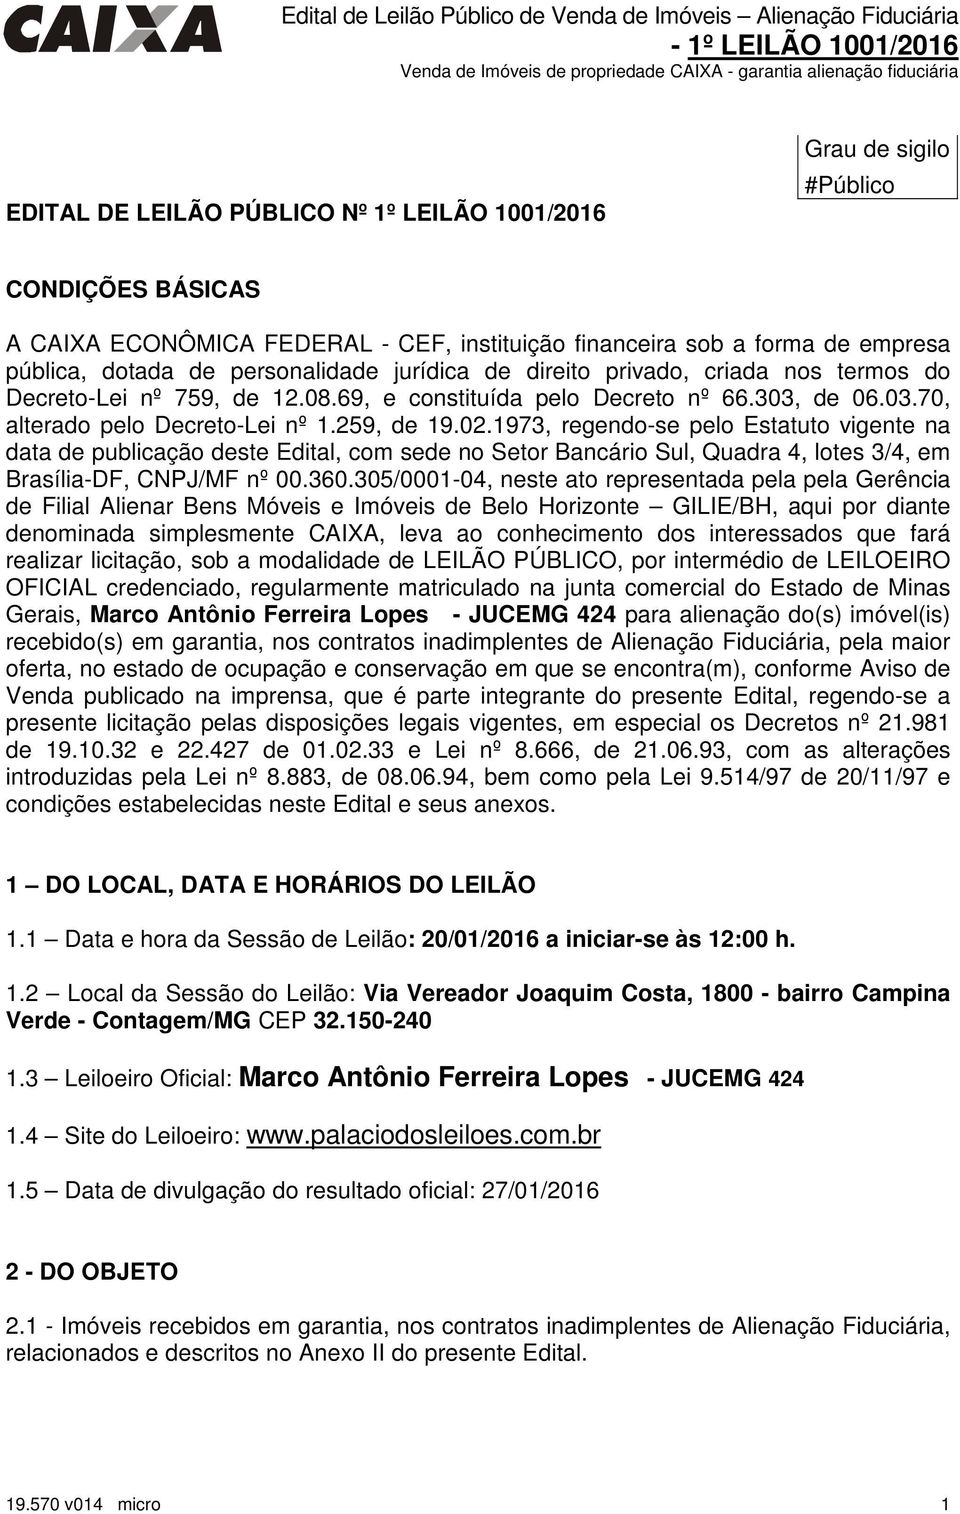 1973, regendo-se pelo Estatuto vigente na data de publicação deste Edital, com sede no Setor Bancário Sul, Quadra 4, lotes 3/4, em Brasília-DF, CNPJ/MF nº 00.360.